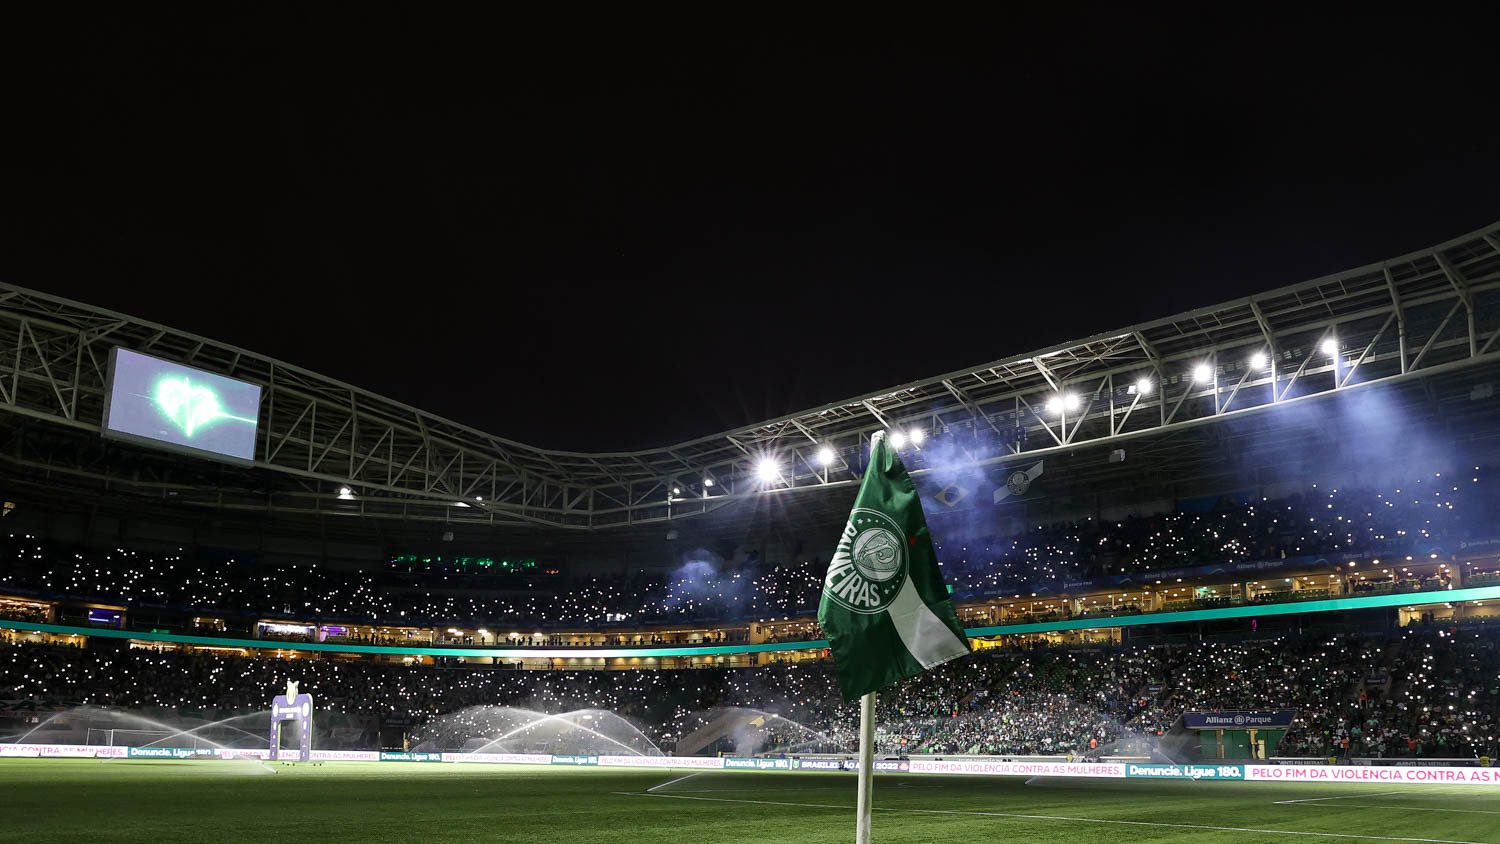 Brasileiro Feminino: venda de ingressos populares para o Choque-Rei no  Allianz Parque – Palmeiras